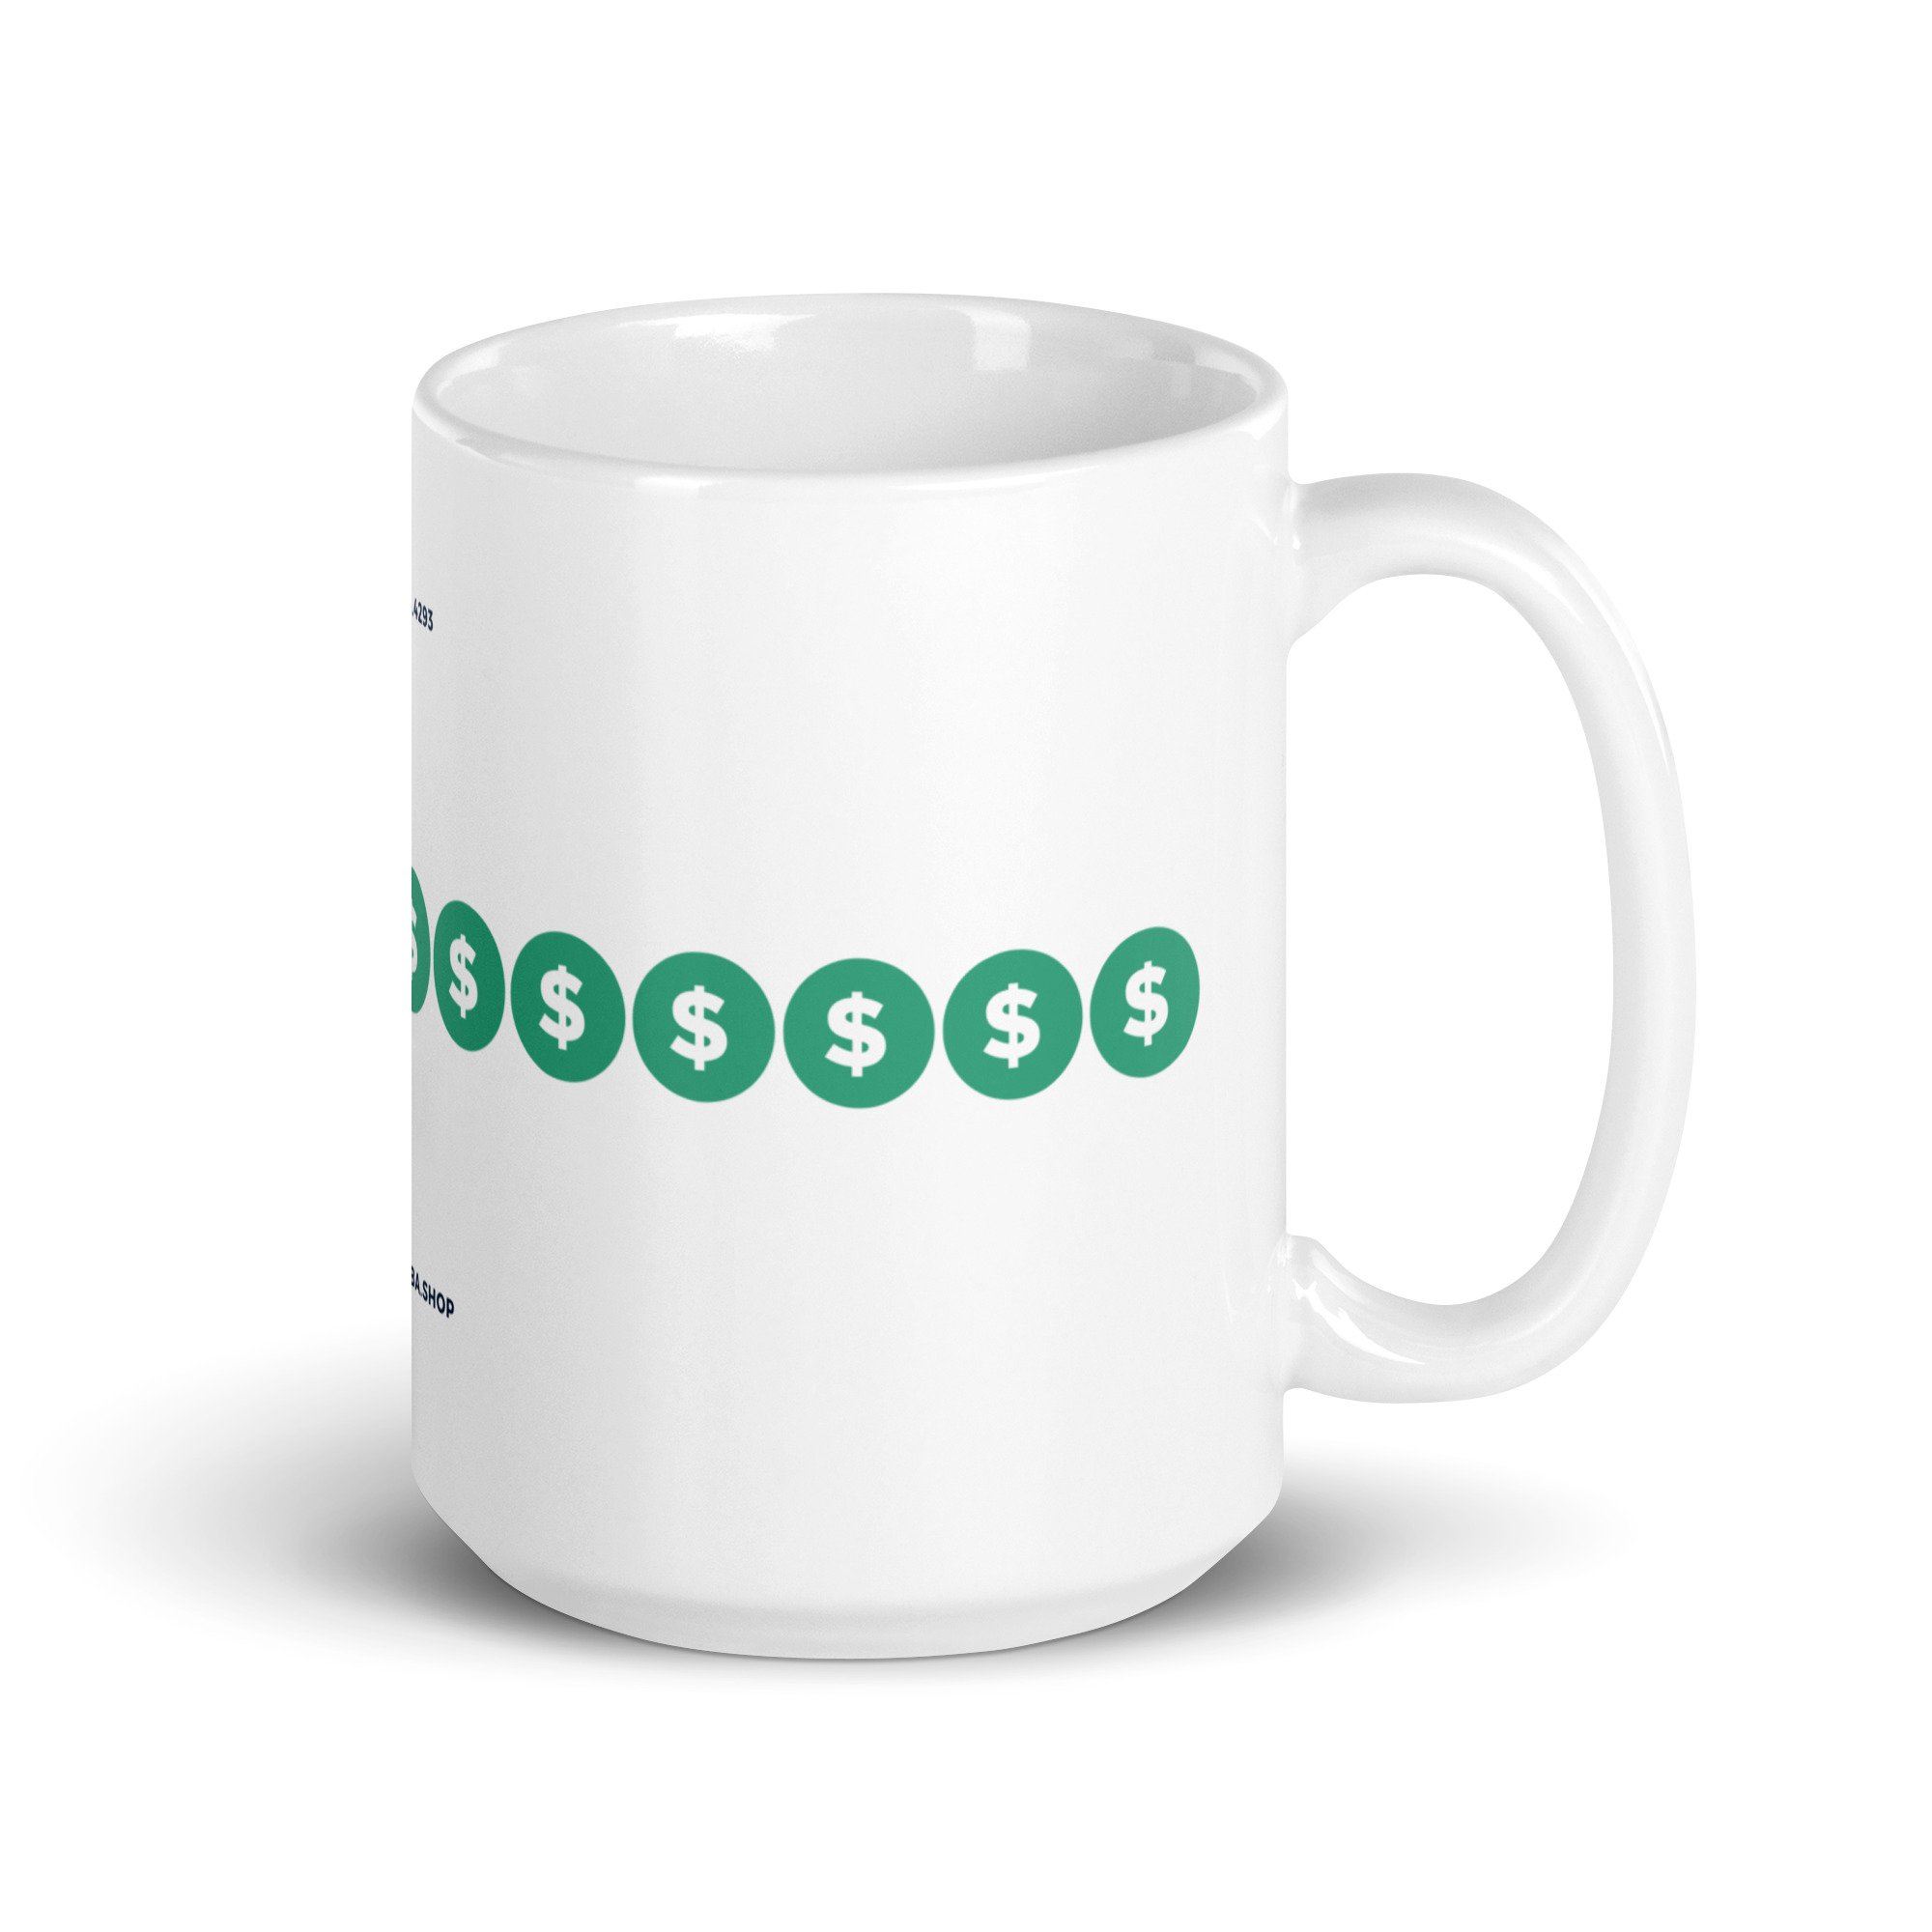 white-glossy-mug-15oz-handle-on-right-6363ff9bd4dc8.jpg